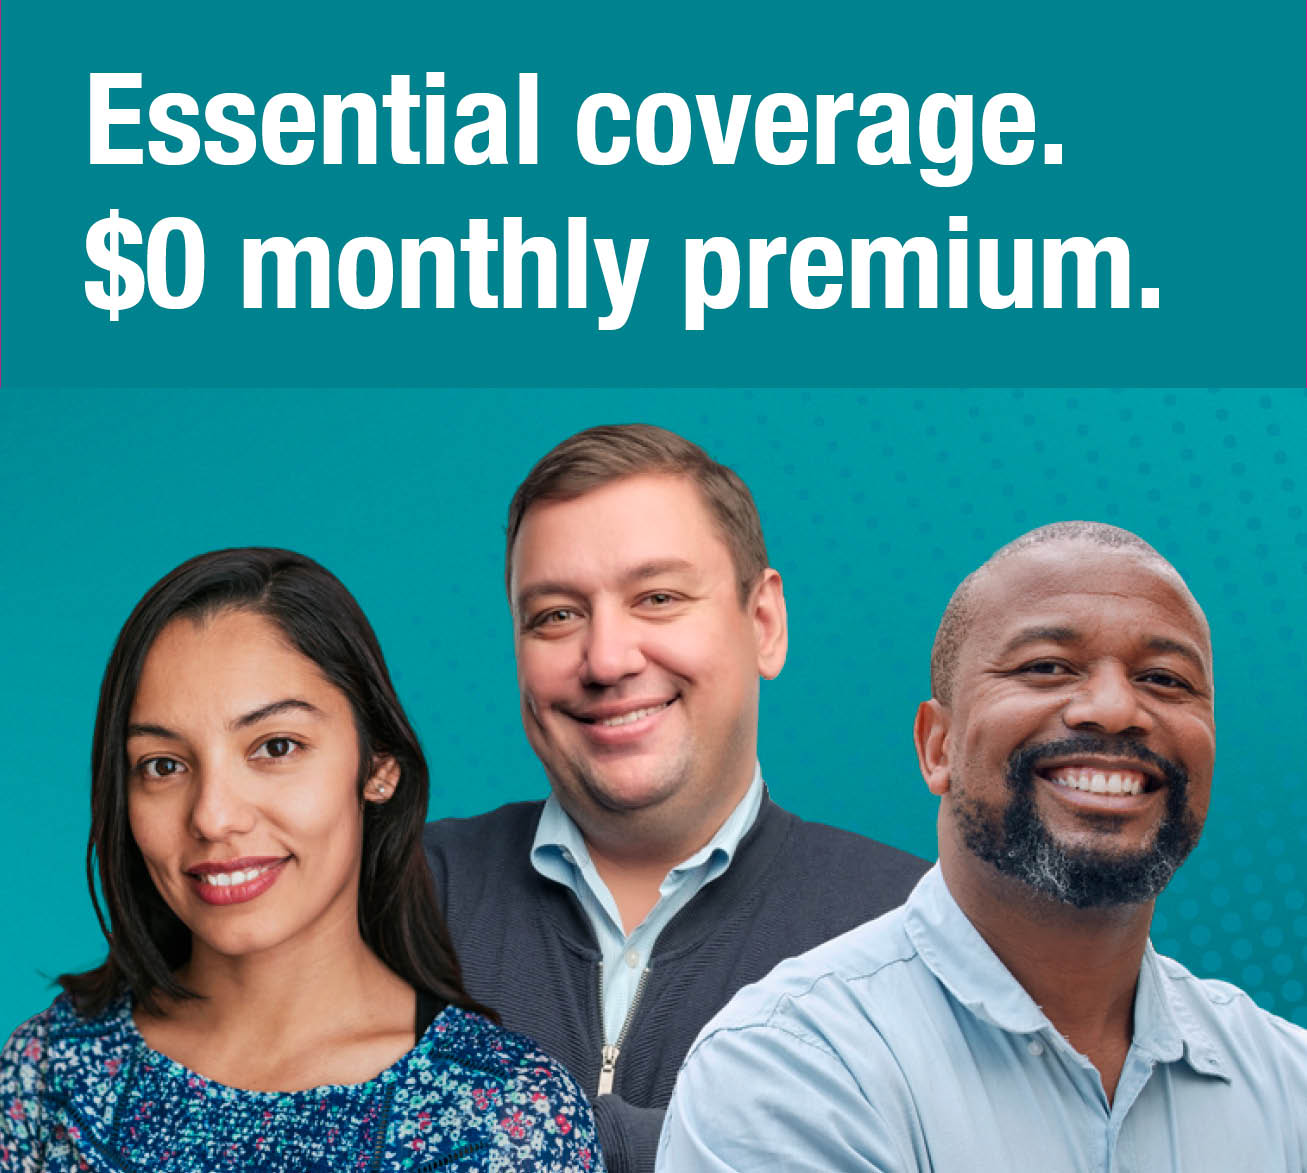 Essential coverage. $0 monthly premium